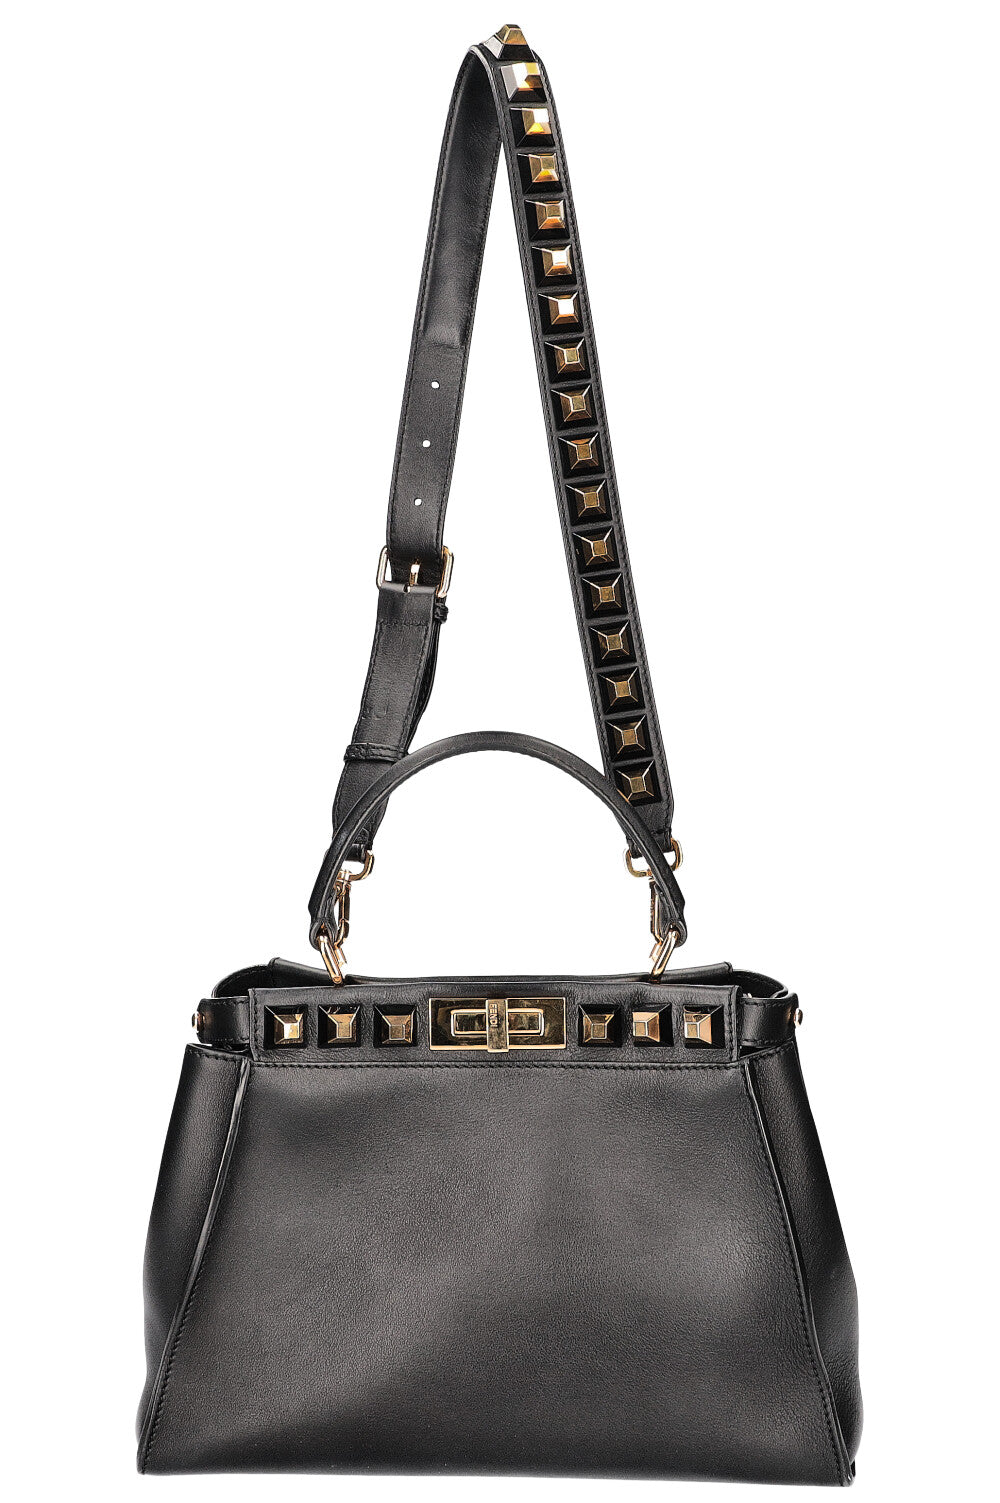 FENDI Medium Peekaboo Bag with Studded Detail Black